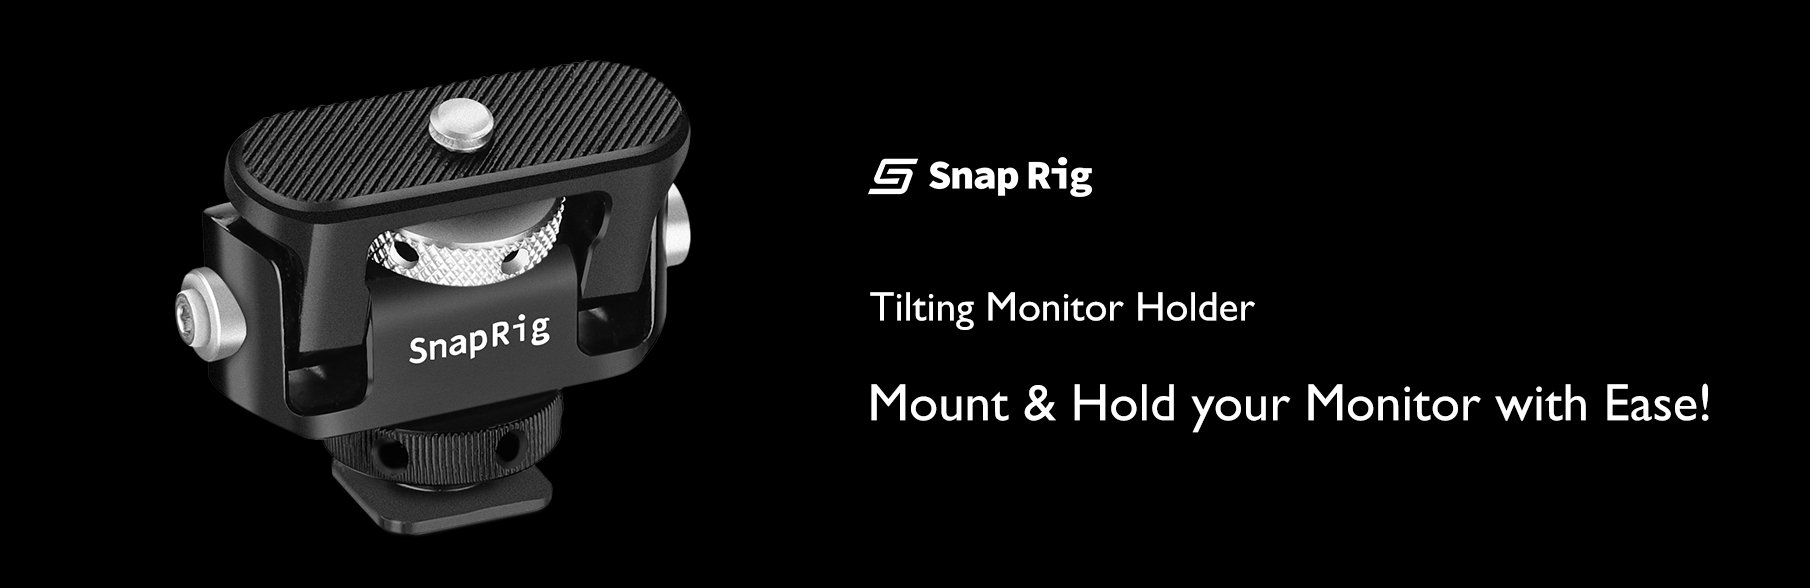 Proaim SnapRig Tilt Monitor Holder with Cold Shoe Mount. CMH 231.